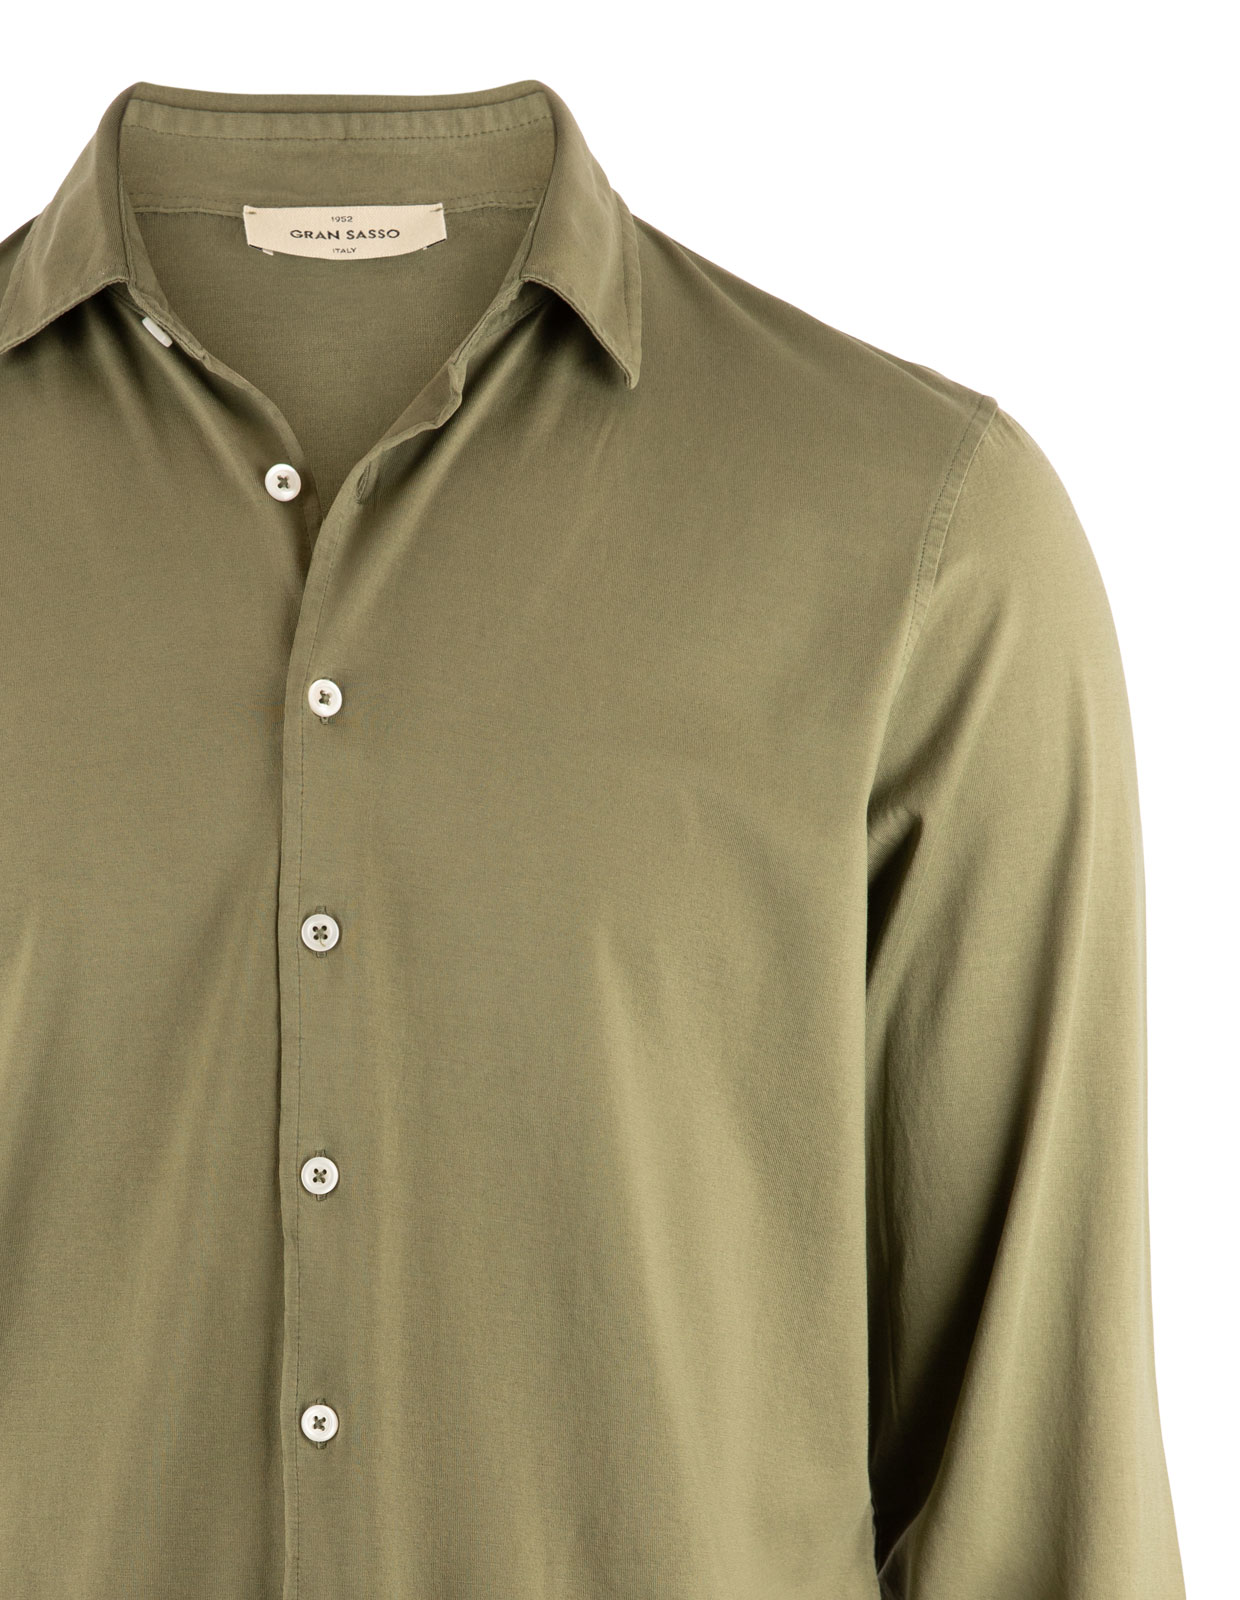 Jerseyskjorta Bomull Olivgrön Stl 50